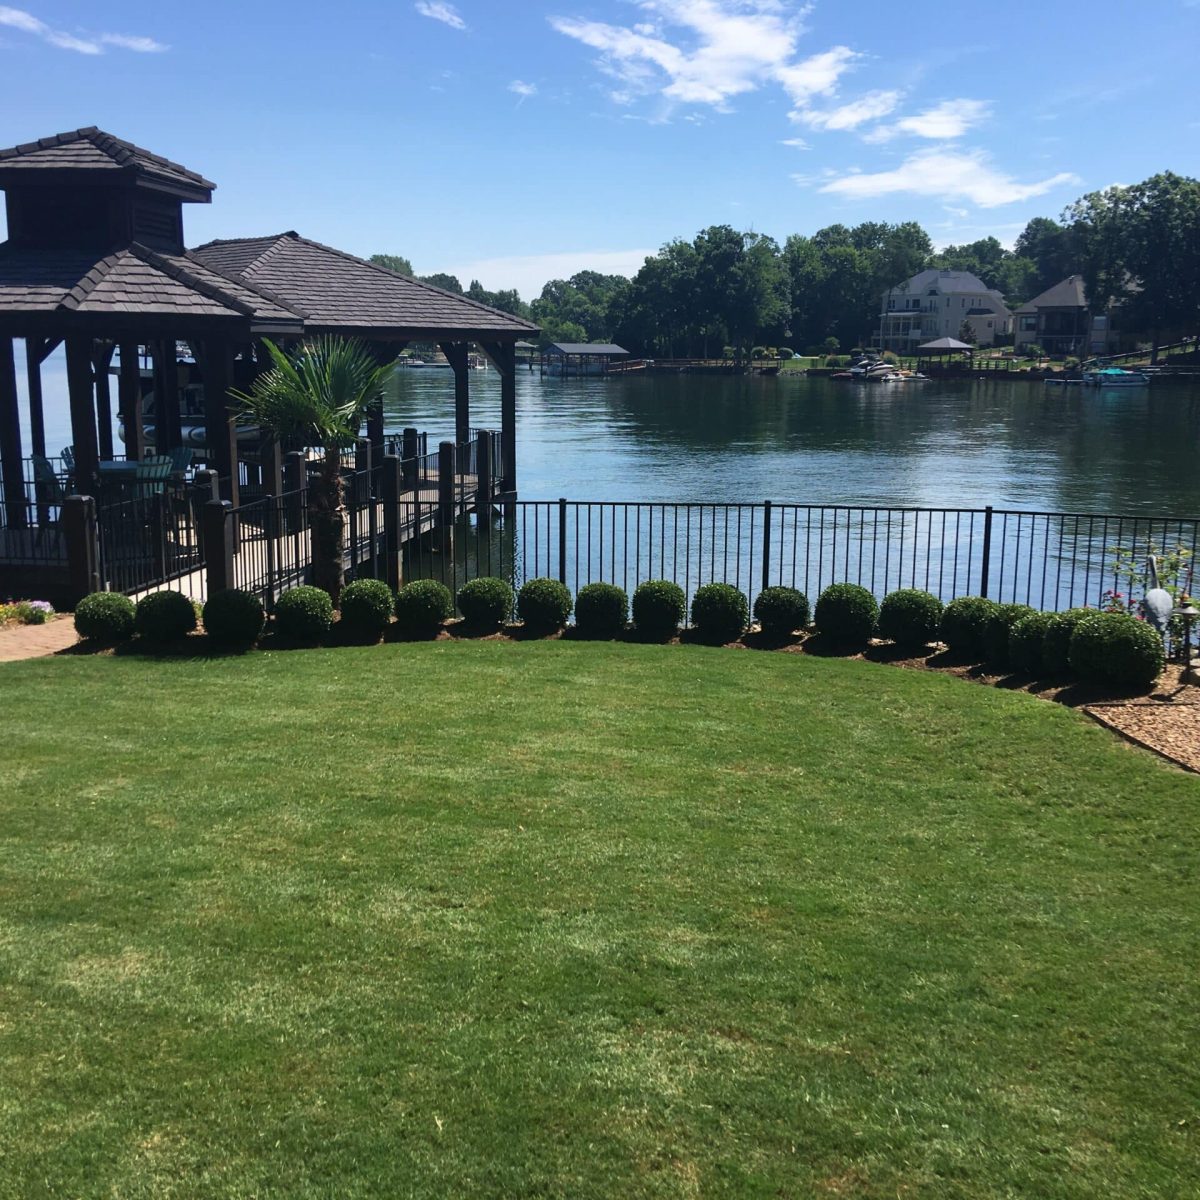 A lawn with a gazebo near a lake.